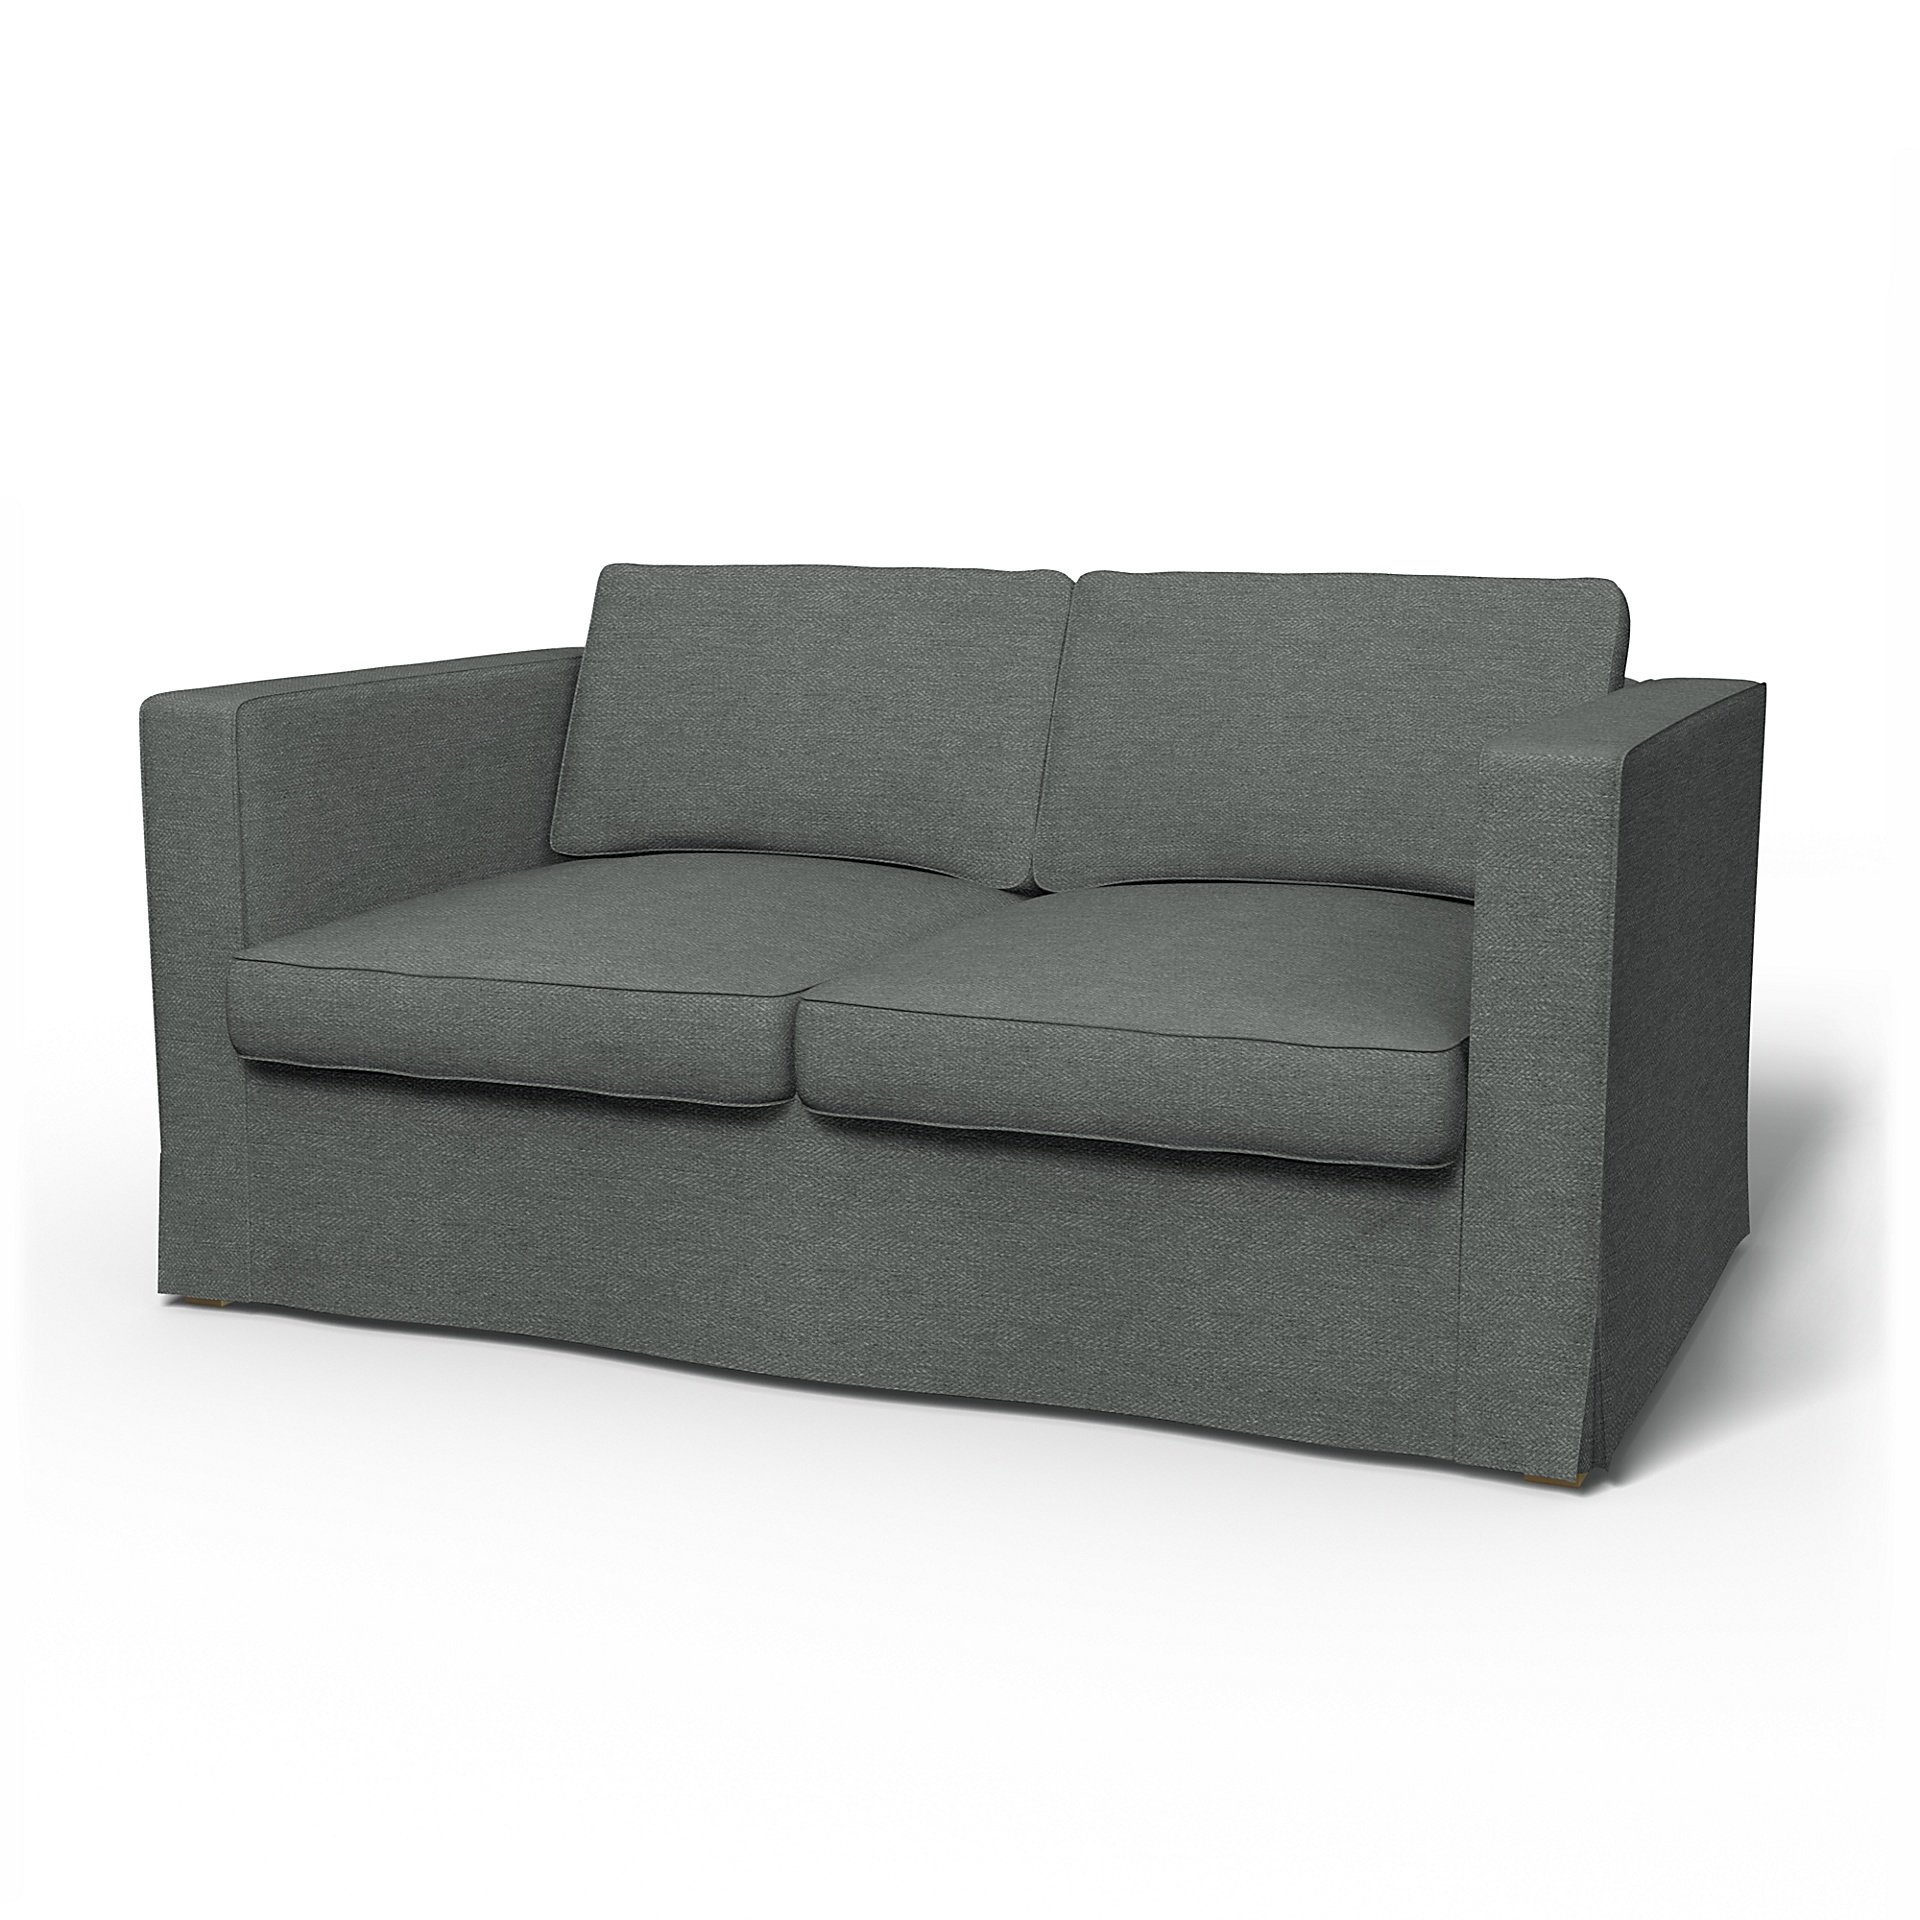 IKEA - Karlanda 2 Seater Sofa Cover, Laurel, Boucle & Texture - Bemz